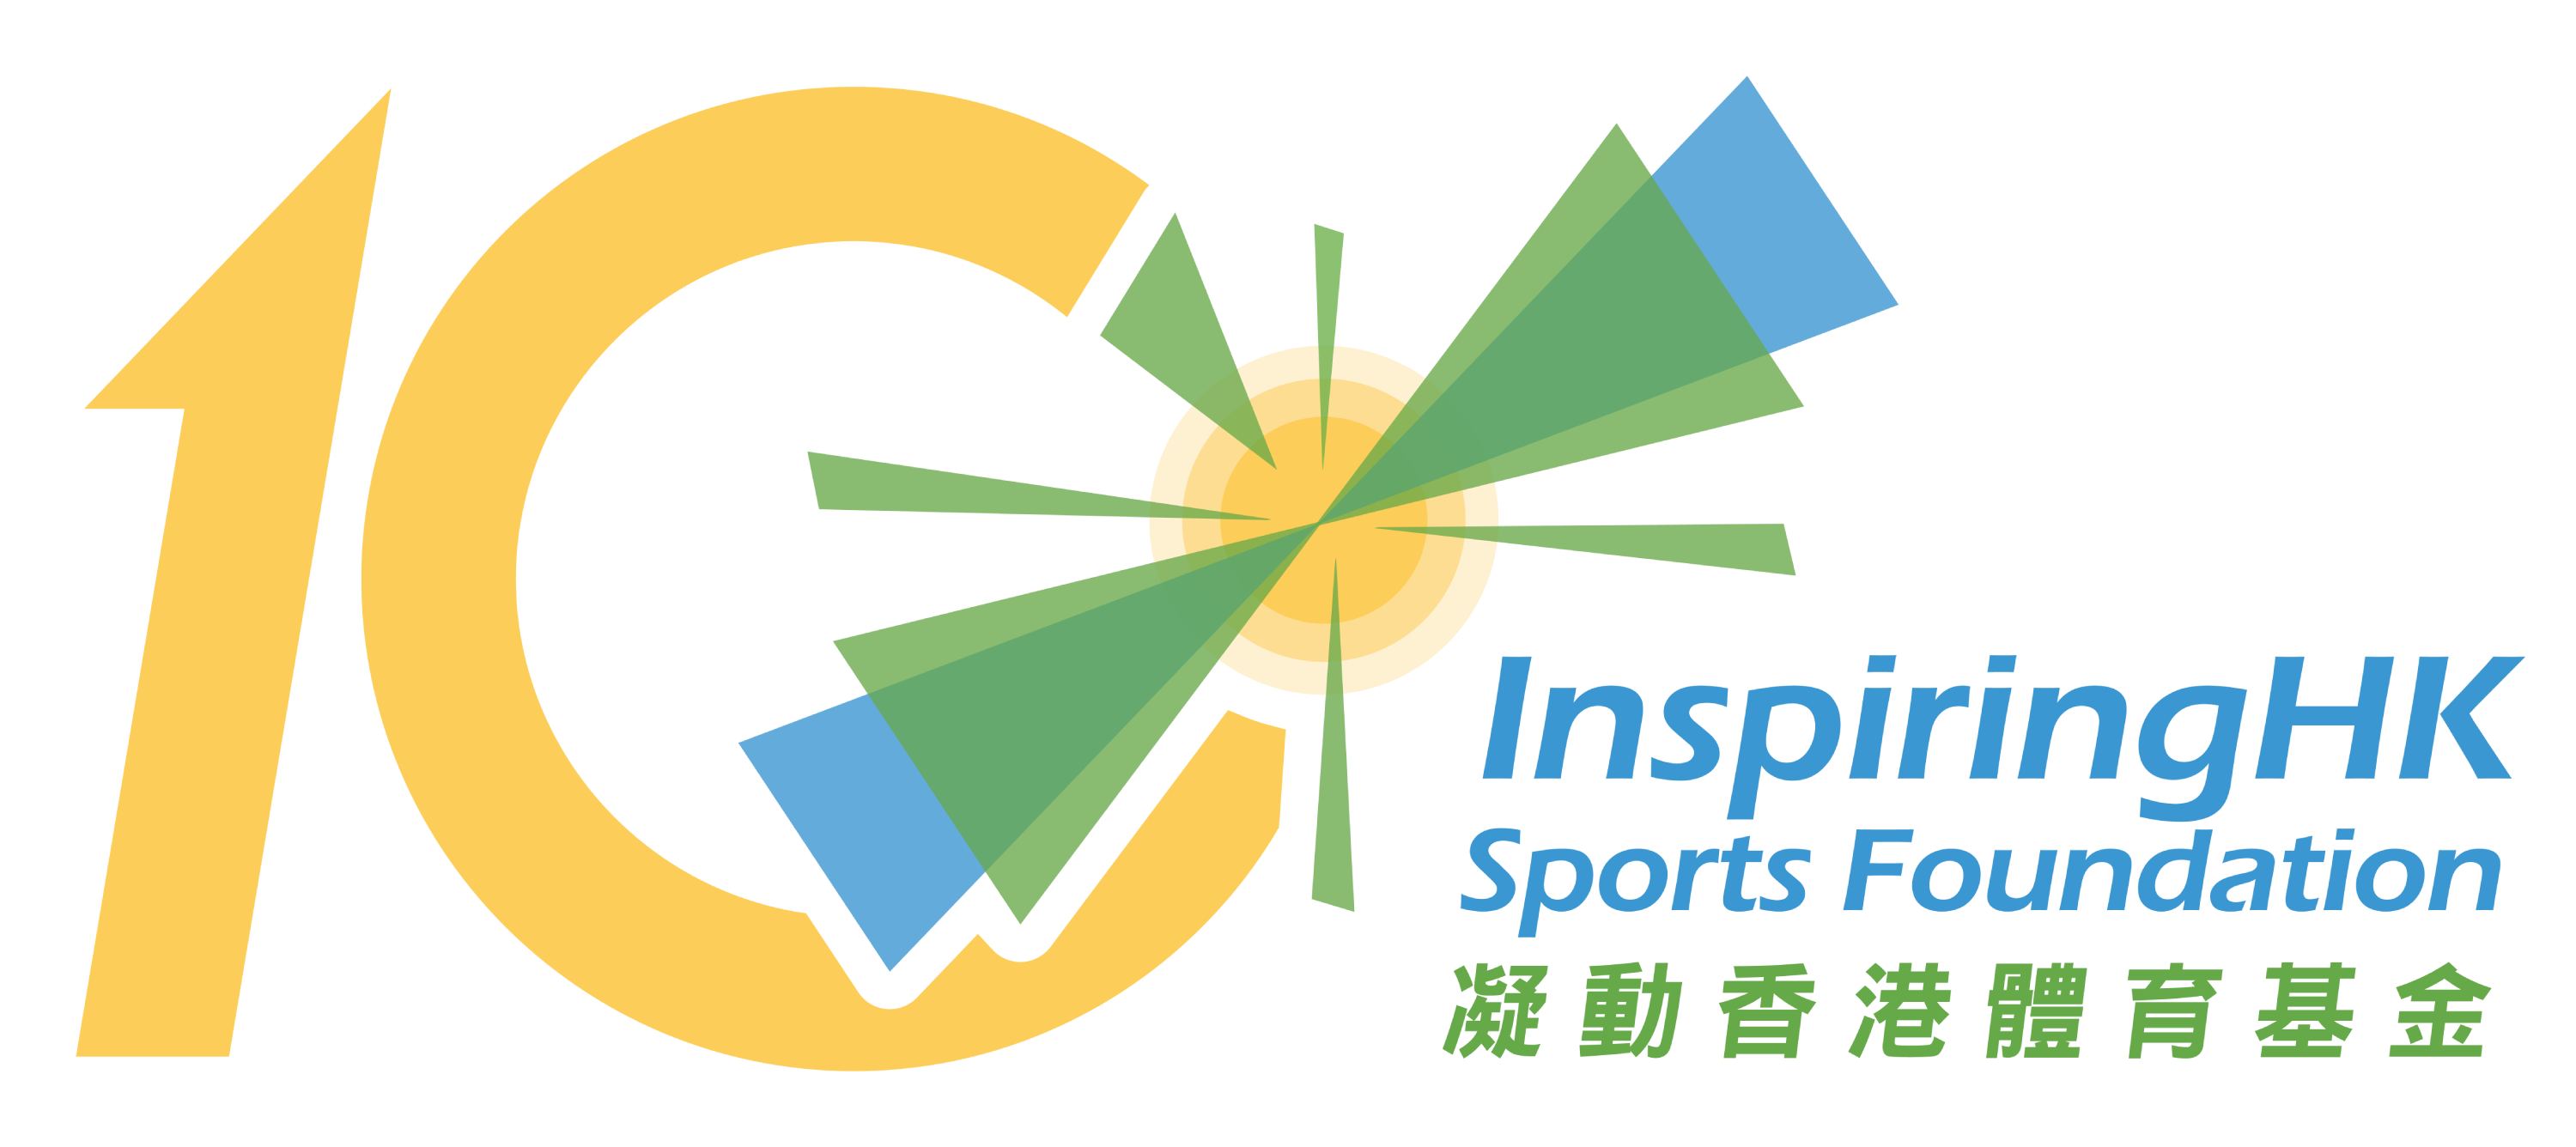 nspiringHK Sports Foundation